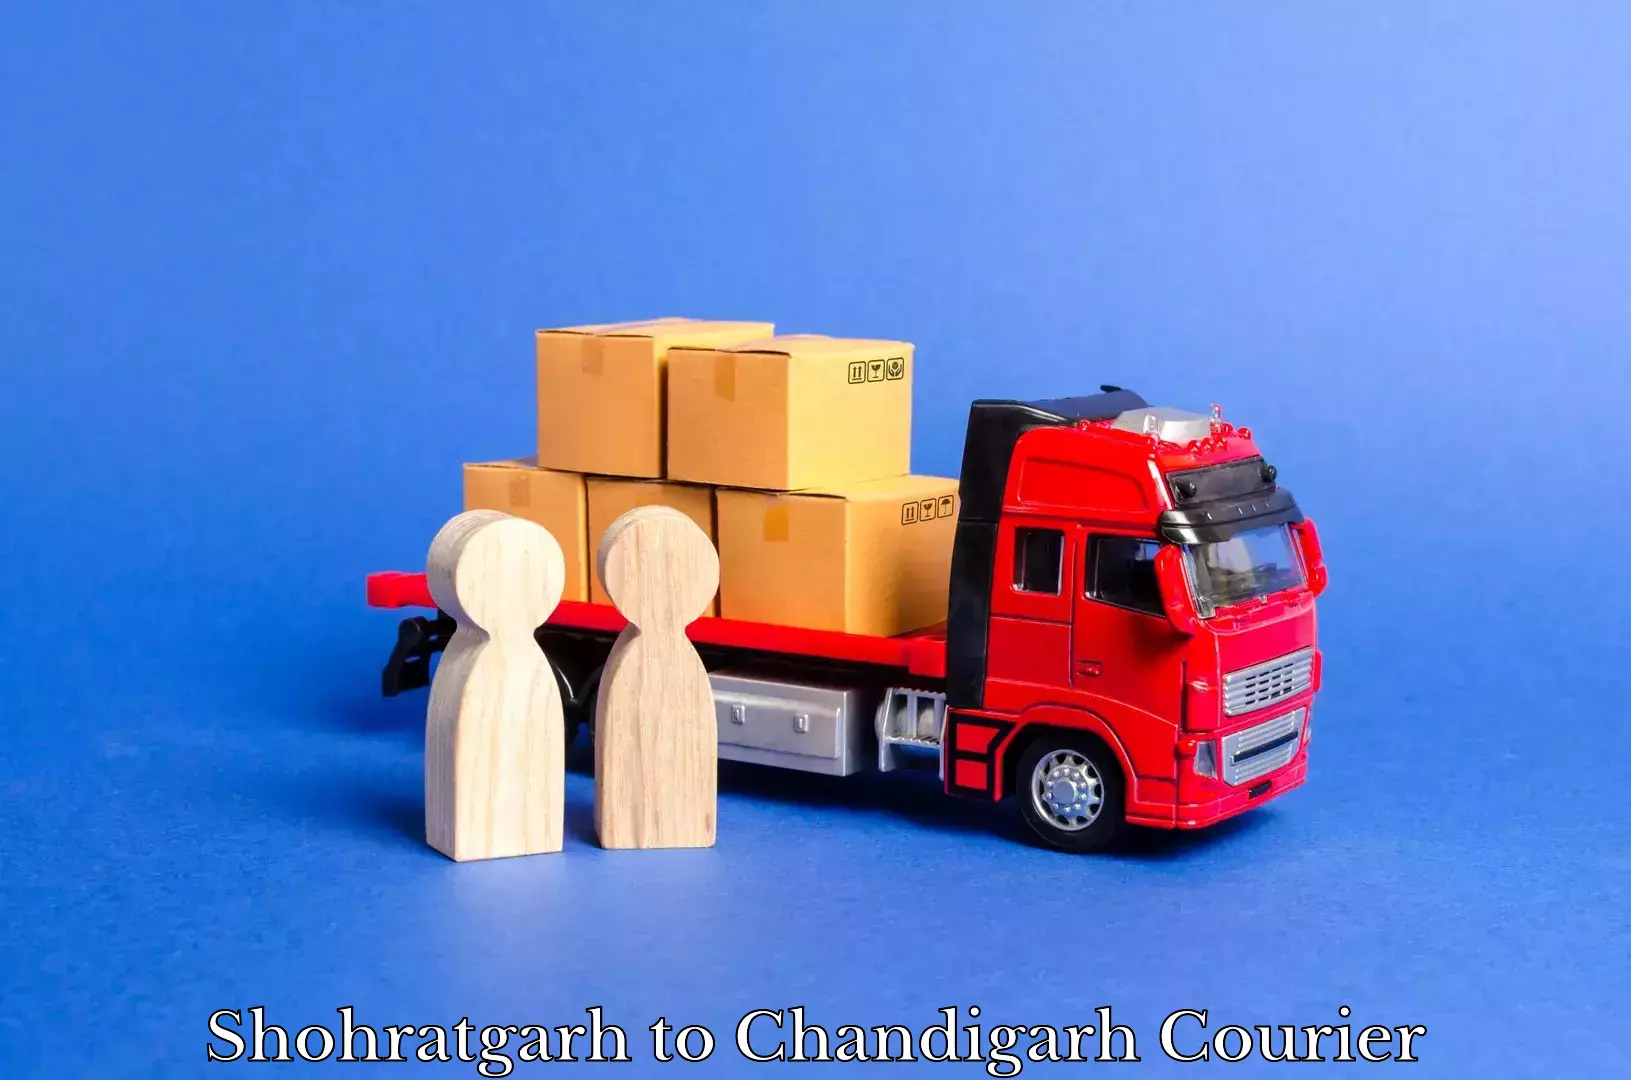 Premium courier solutions Shohratgarh to Chandigarh